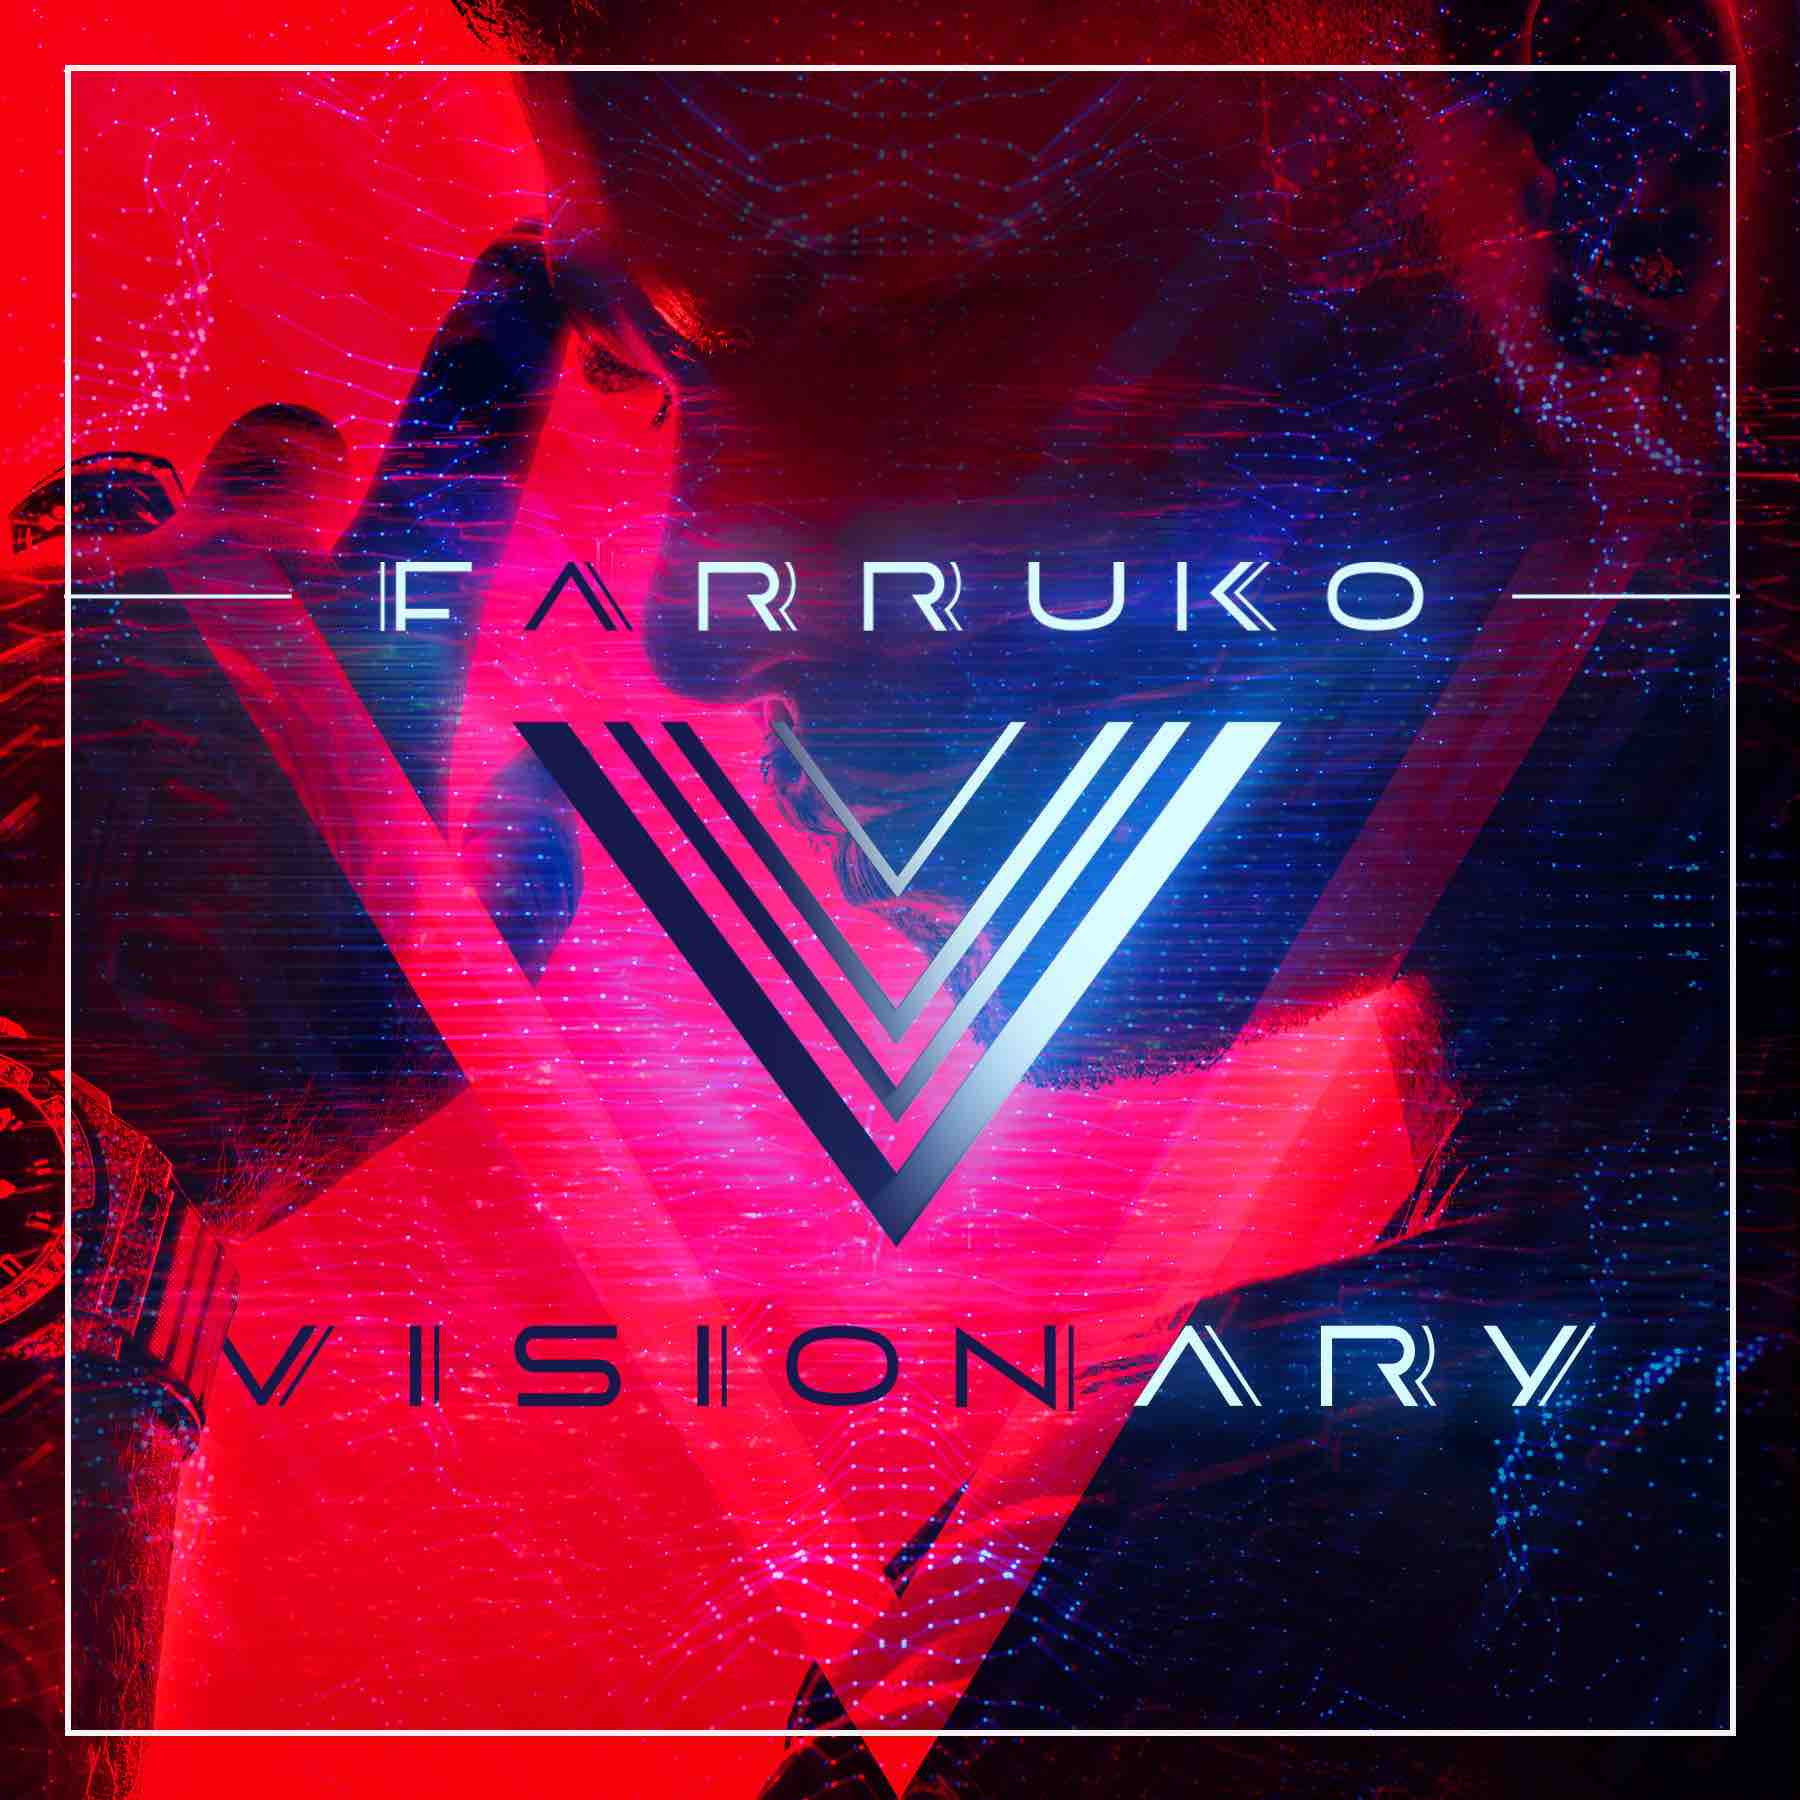 FARRUKO alcanza 1 millón de views en menos de 24 horas del lanzamiento de su video “Obsesionado” // FARRUKO reaches over 1 million views in less than 24 hours with his latest video “Obsesionado”